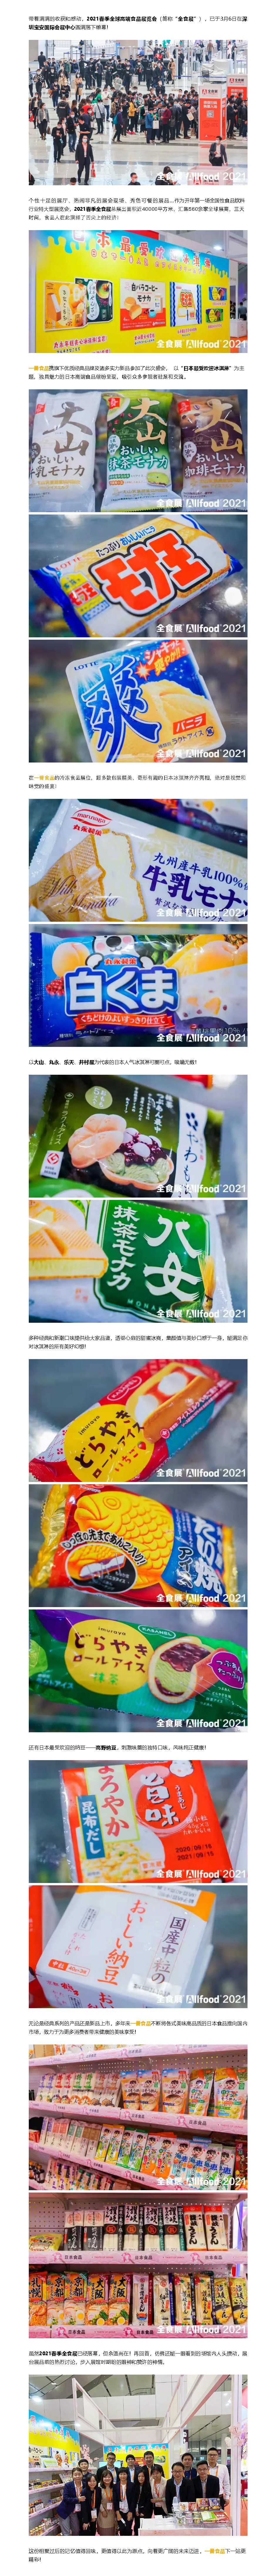 冰淇淋的春天 _ 立足华体会网站
，才能展望未来 5.jpg